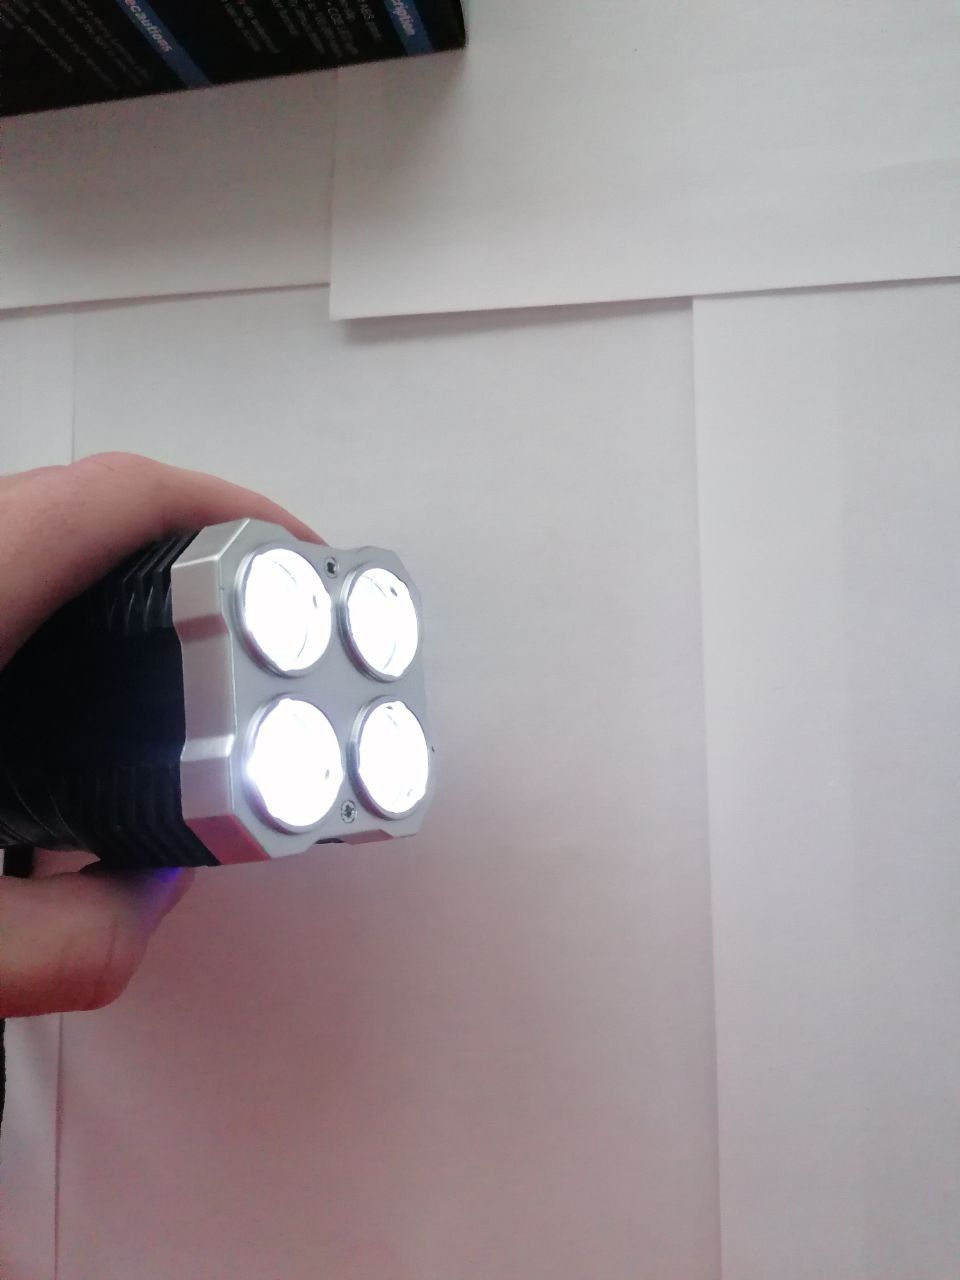 Модель L-S03
Акумуляторний ліхтарик 
Матеріал пласмаса АВС
4 світлодіо